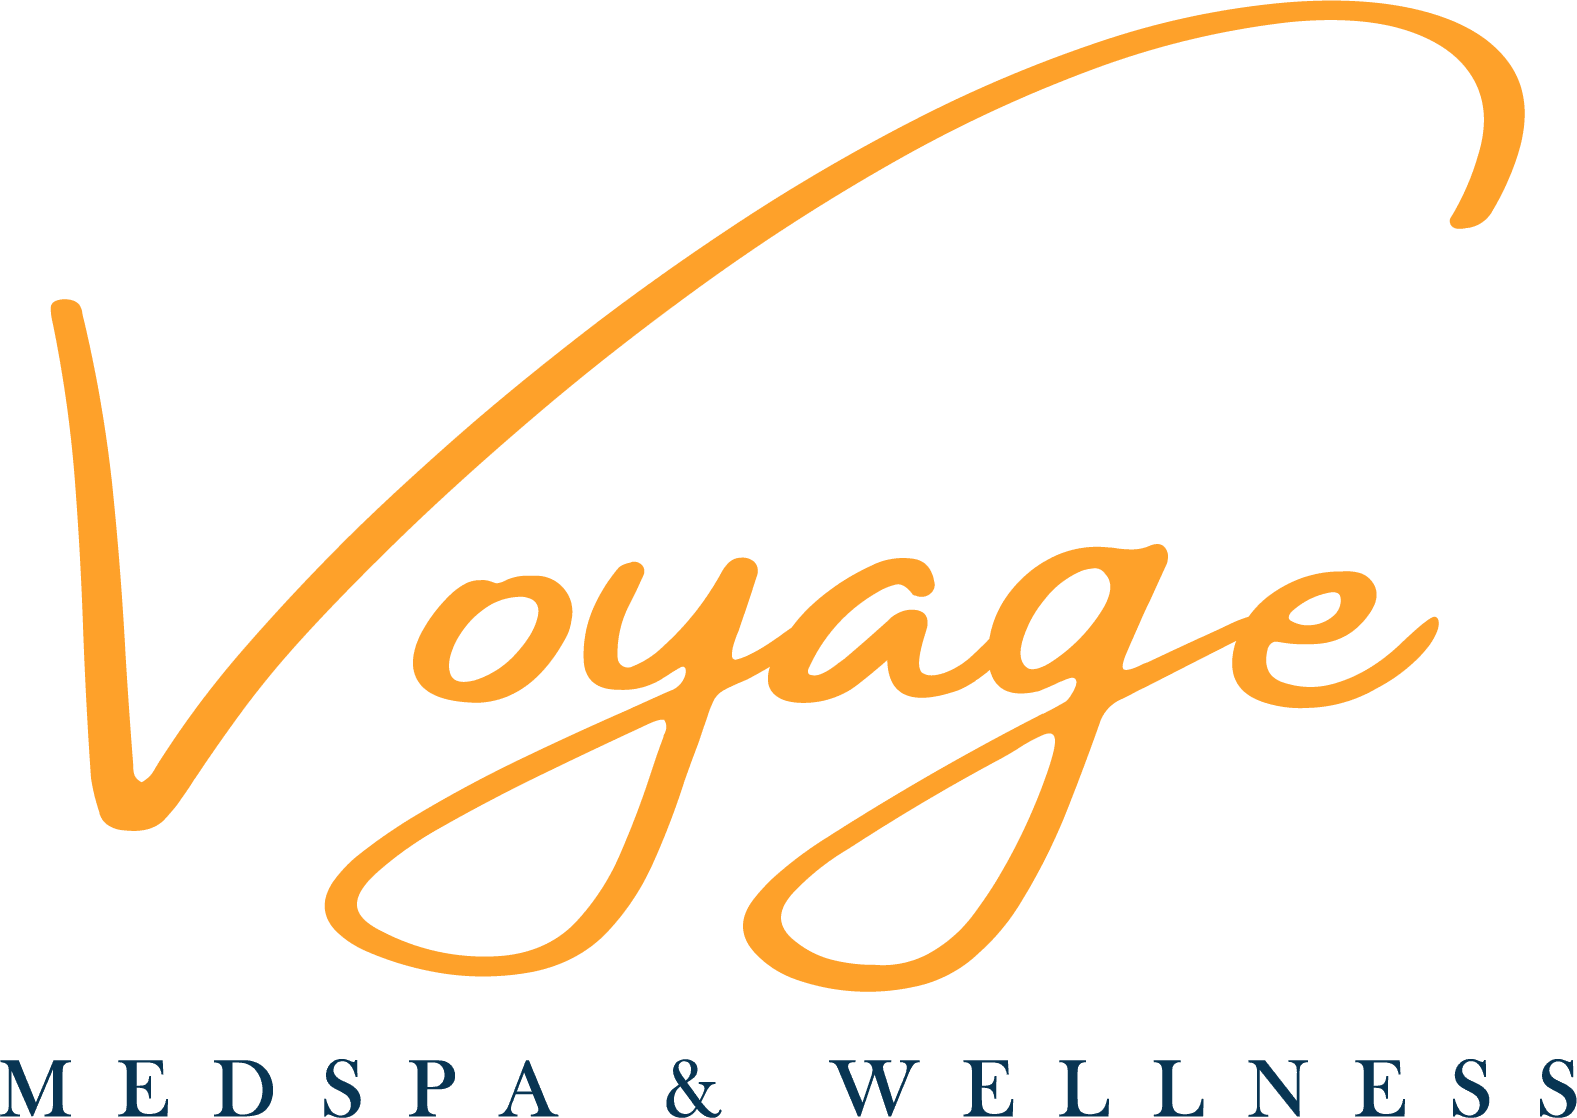 voyage medspa wellness logo